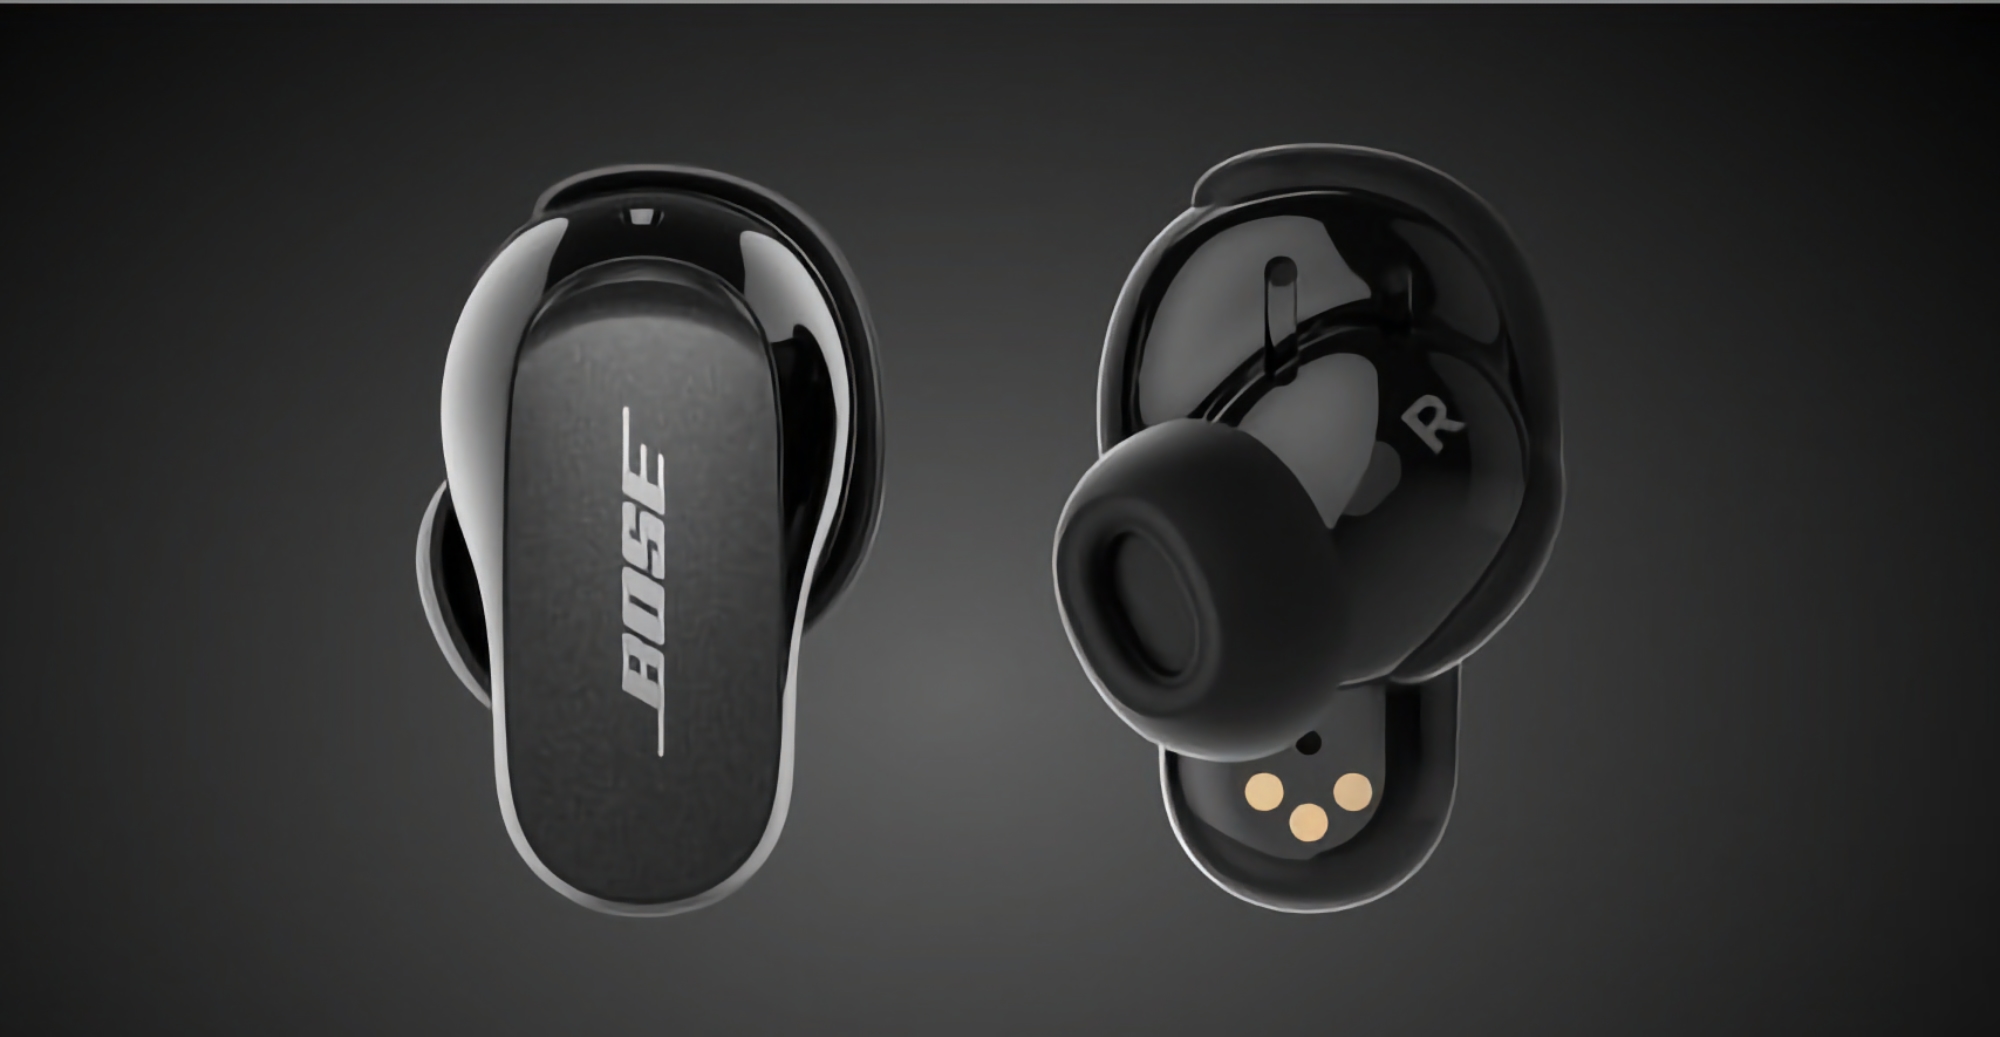 Gli auricolari di punta TWS Bose QuietComfort Earbuds II con ANC e durata della batteria fino a 24 ore sono disponibili a 50 dollari su Amazon.